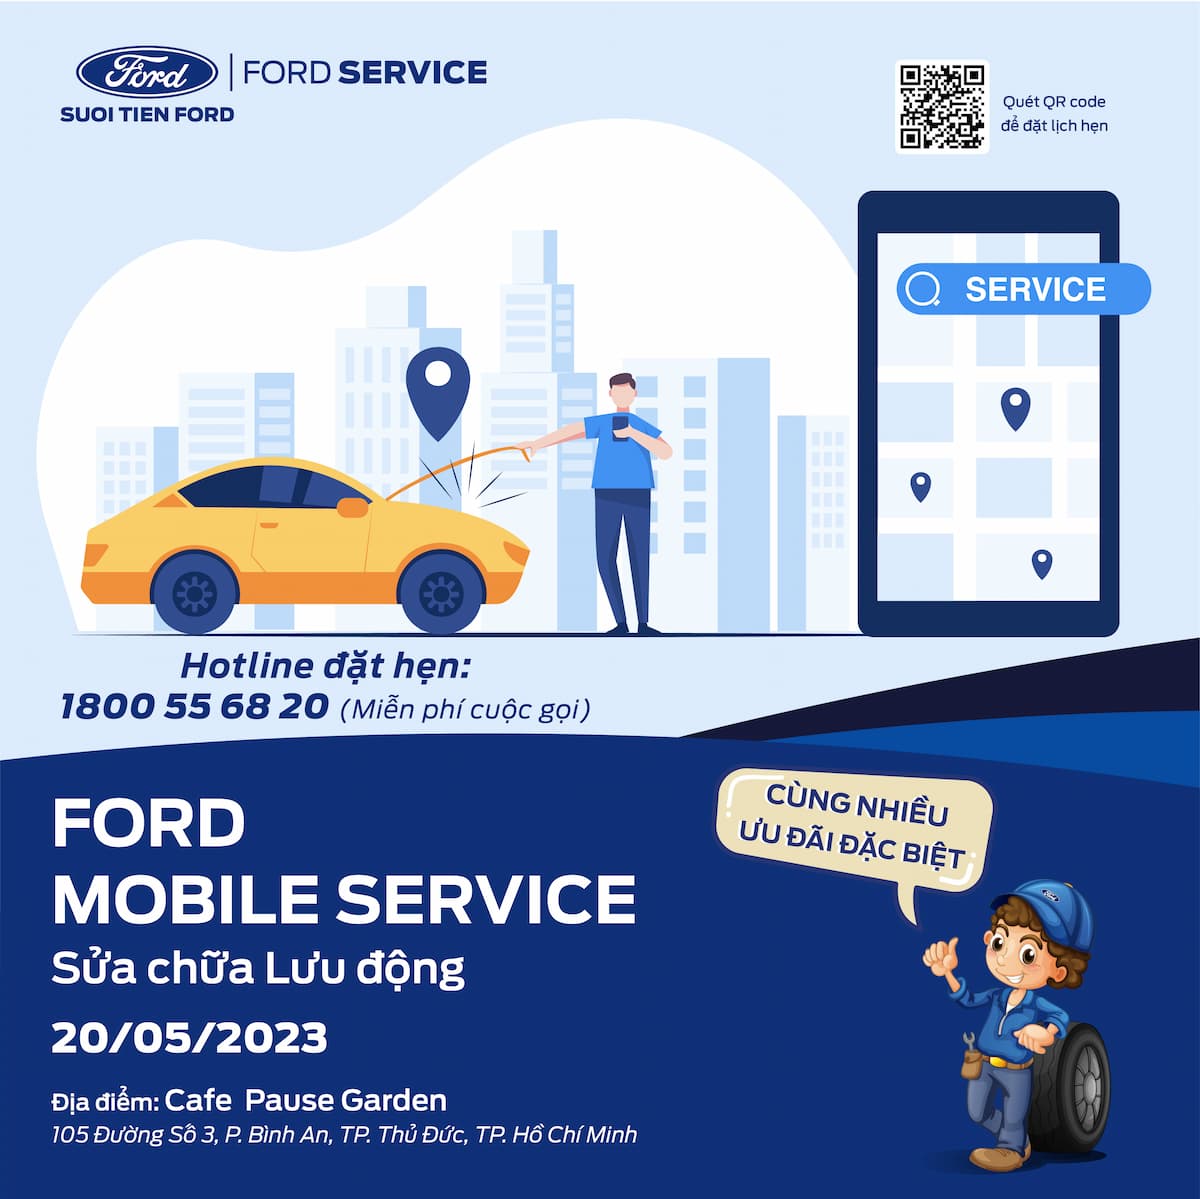 Ford Mobile Service - Sửa chữa lưu động tại Pause Garden